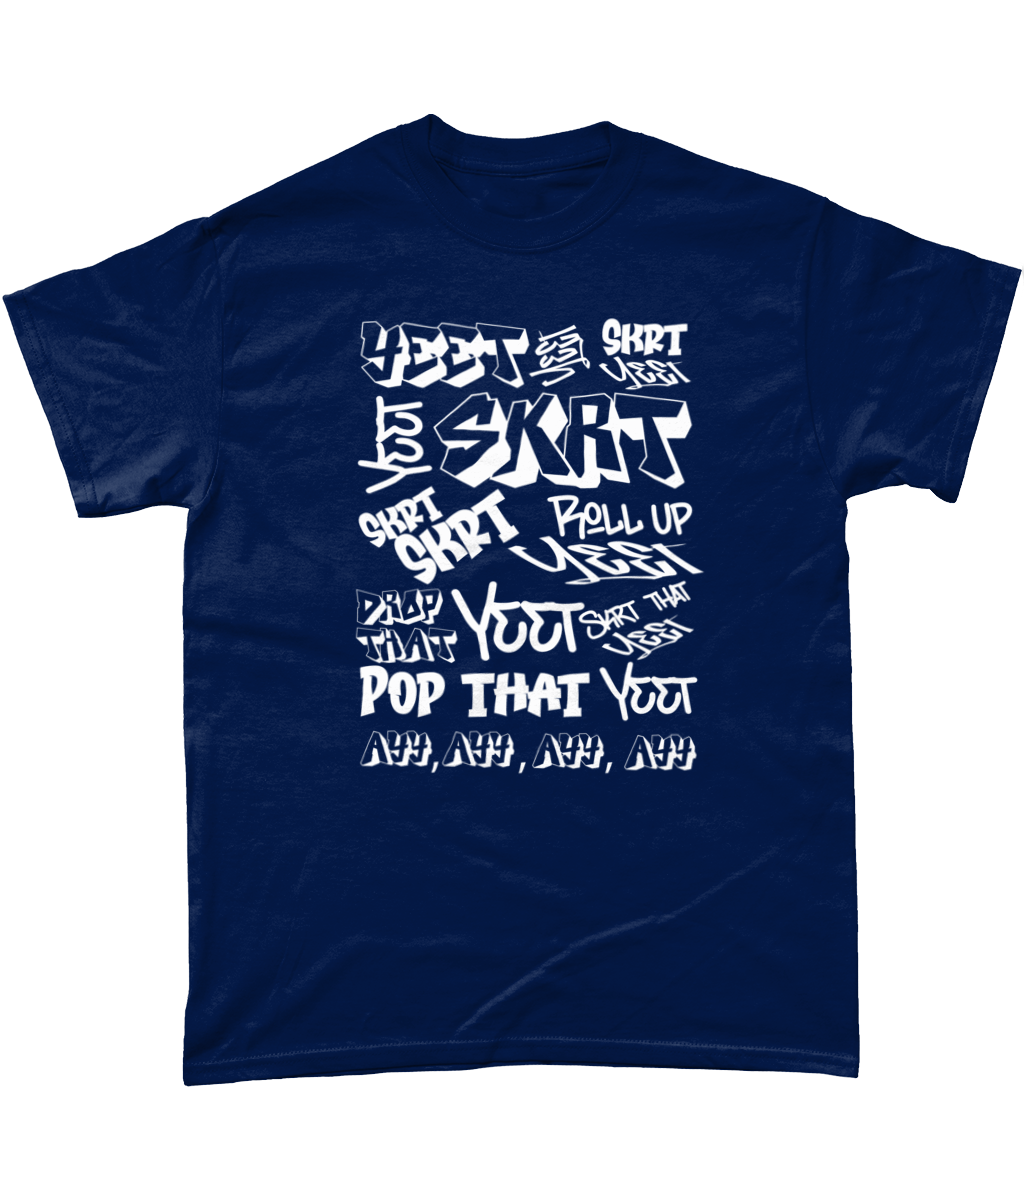 Yeet Yeet Skrt T-Shirt